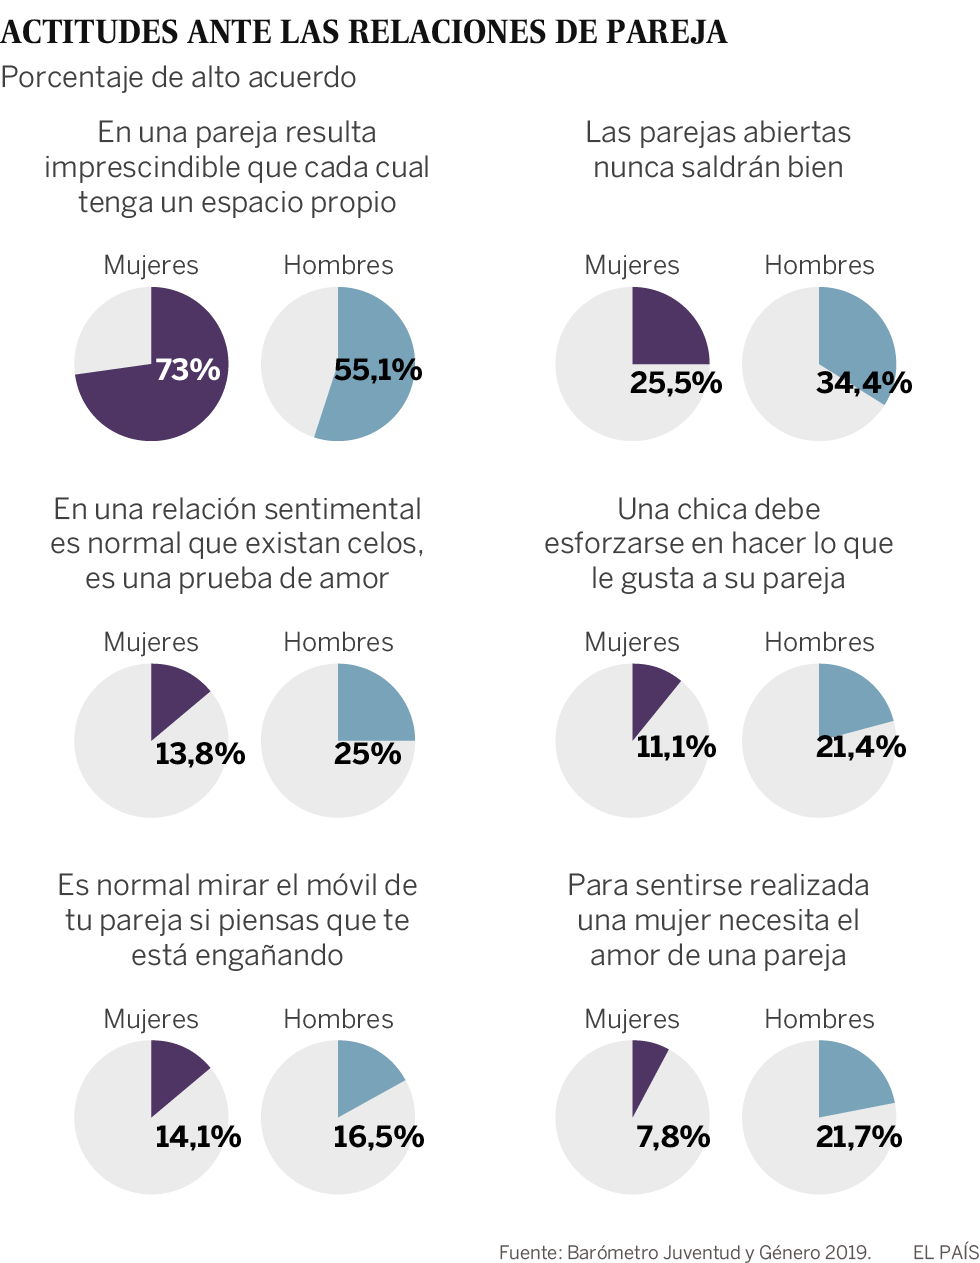 Las jóvenes españolas son más feministas, ellos cada vez más controladores